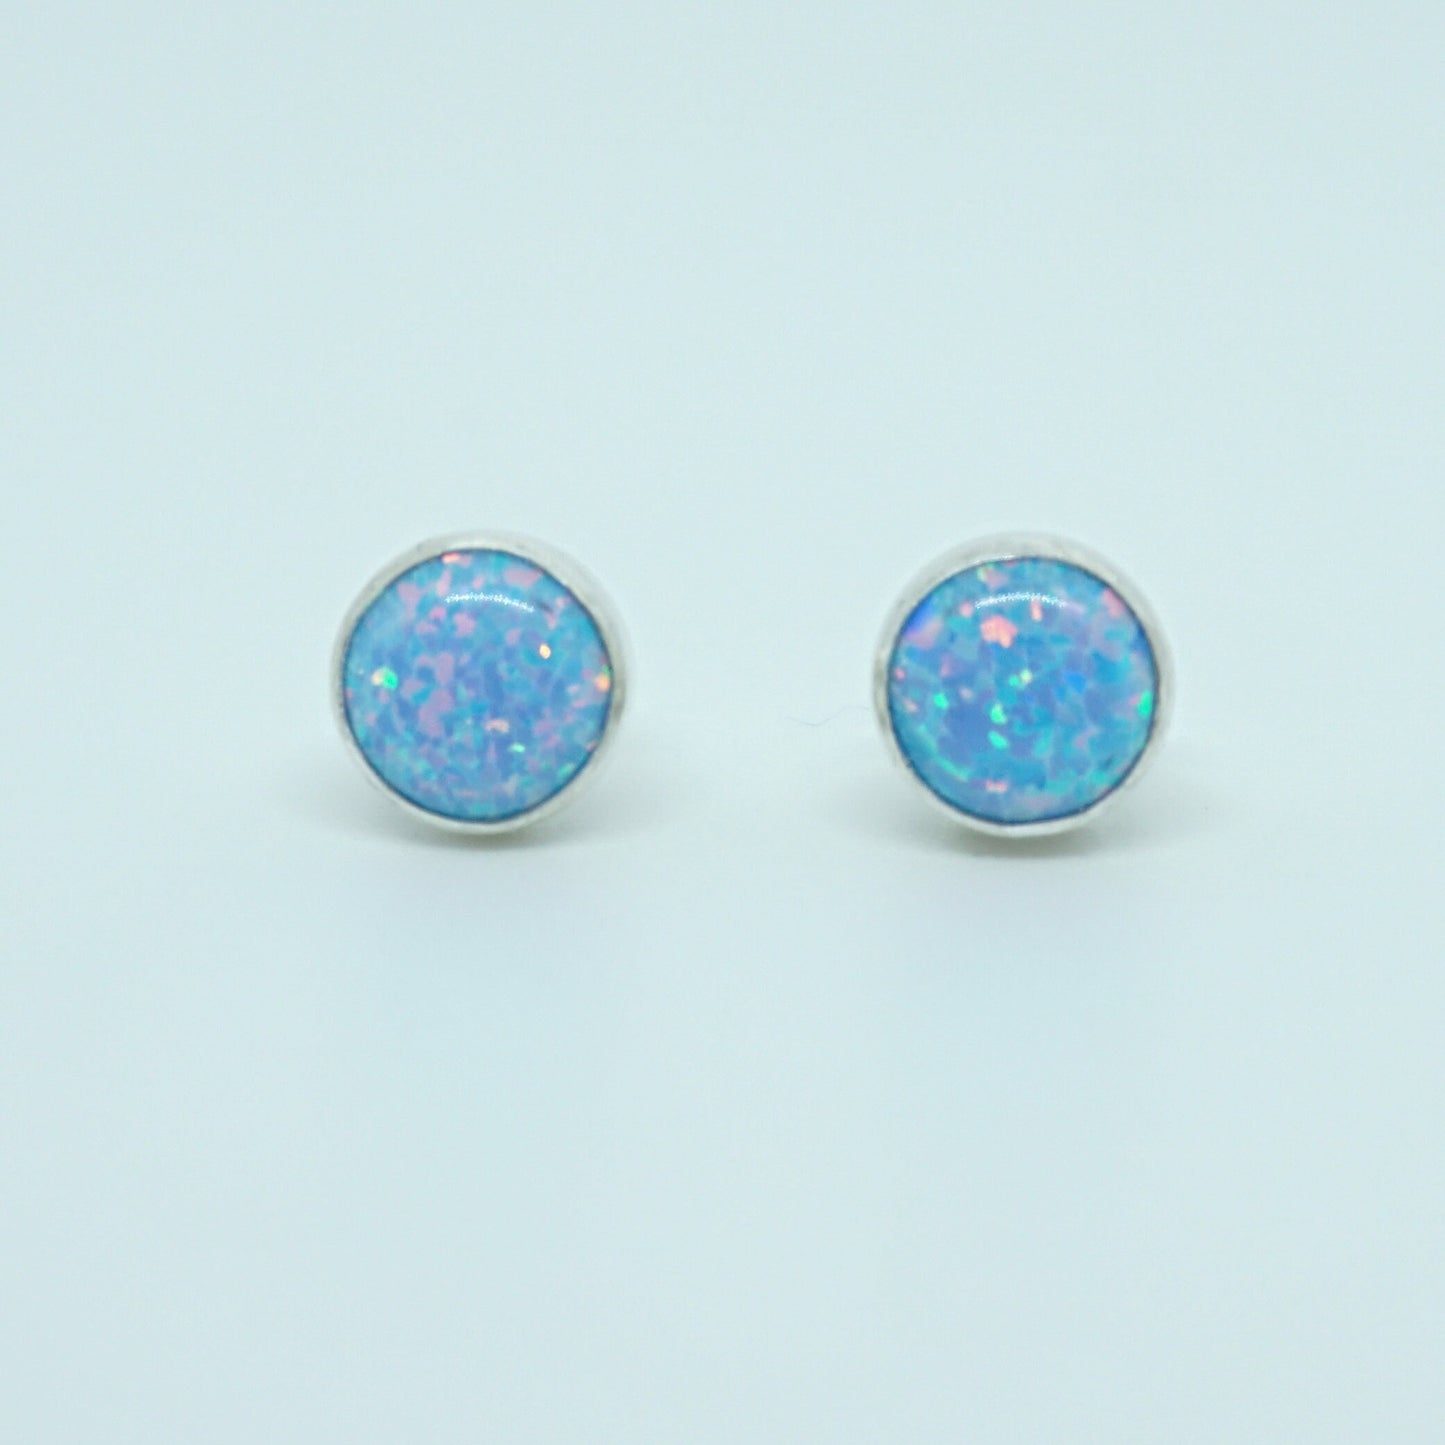 Light Blue Aura Opal Stud Earrings, 6mm - Cultured Opal Earrings, Cultured Opal Jewelry, Sterling Silver Earrings